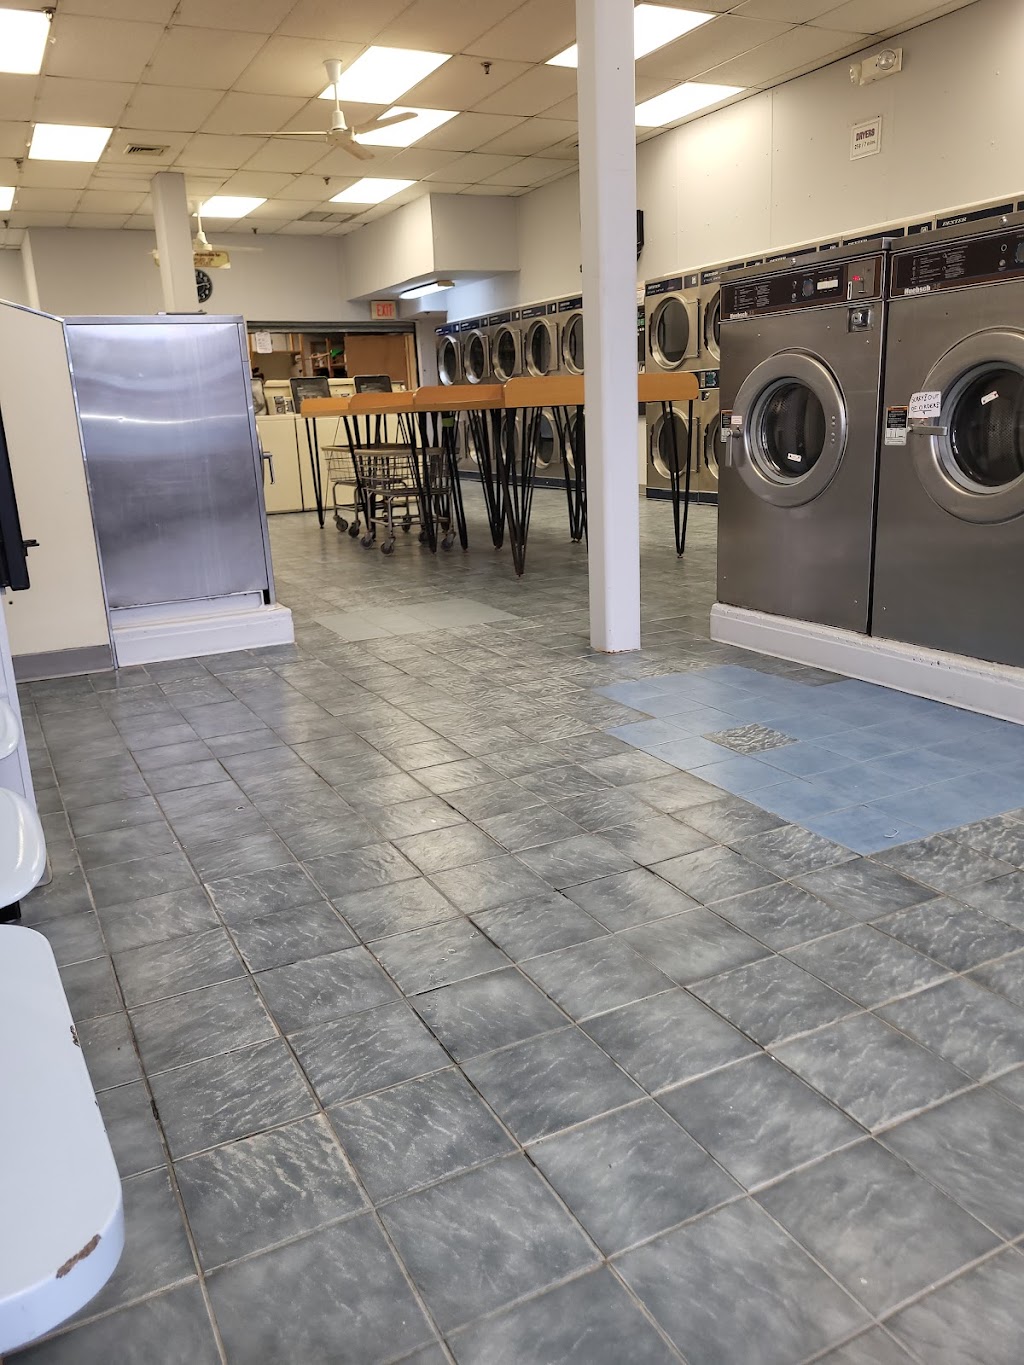 Denville Laundromat/Wash and Fold | 123 E Main St, Denville, NJ 07834 | Phone: (973) 453-6263